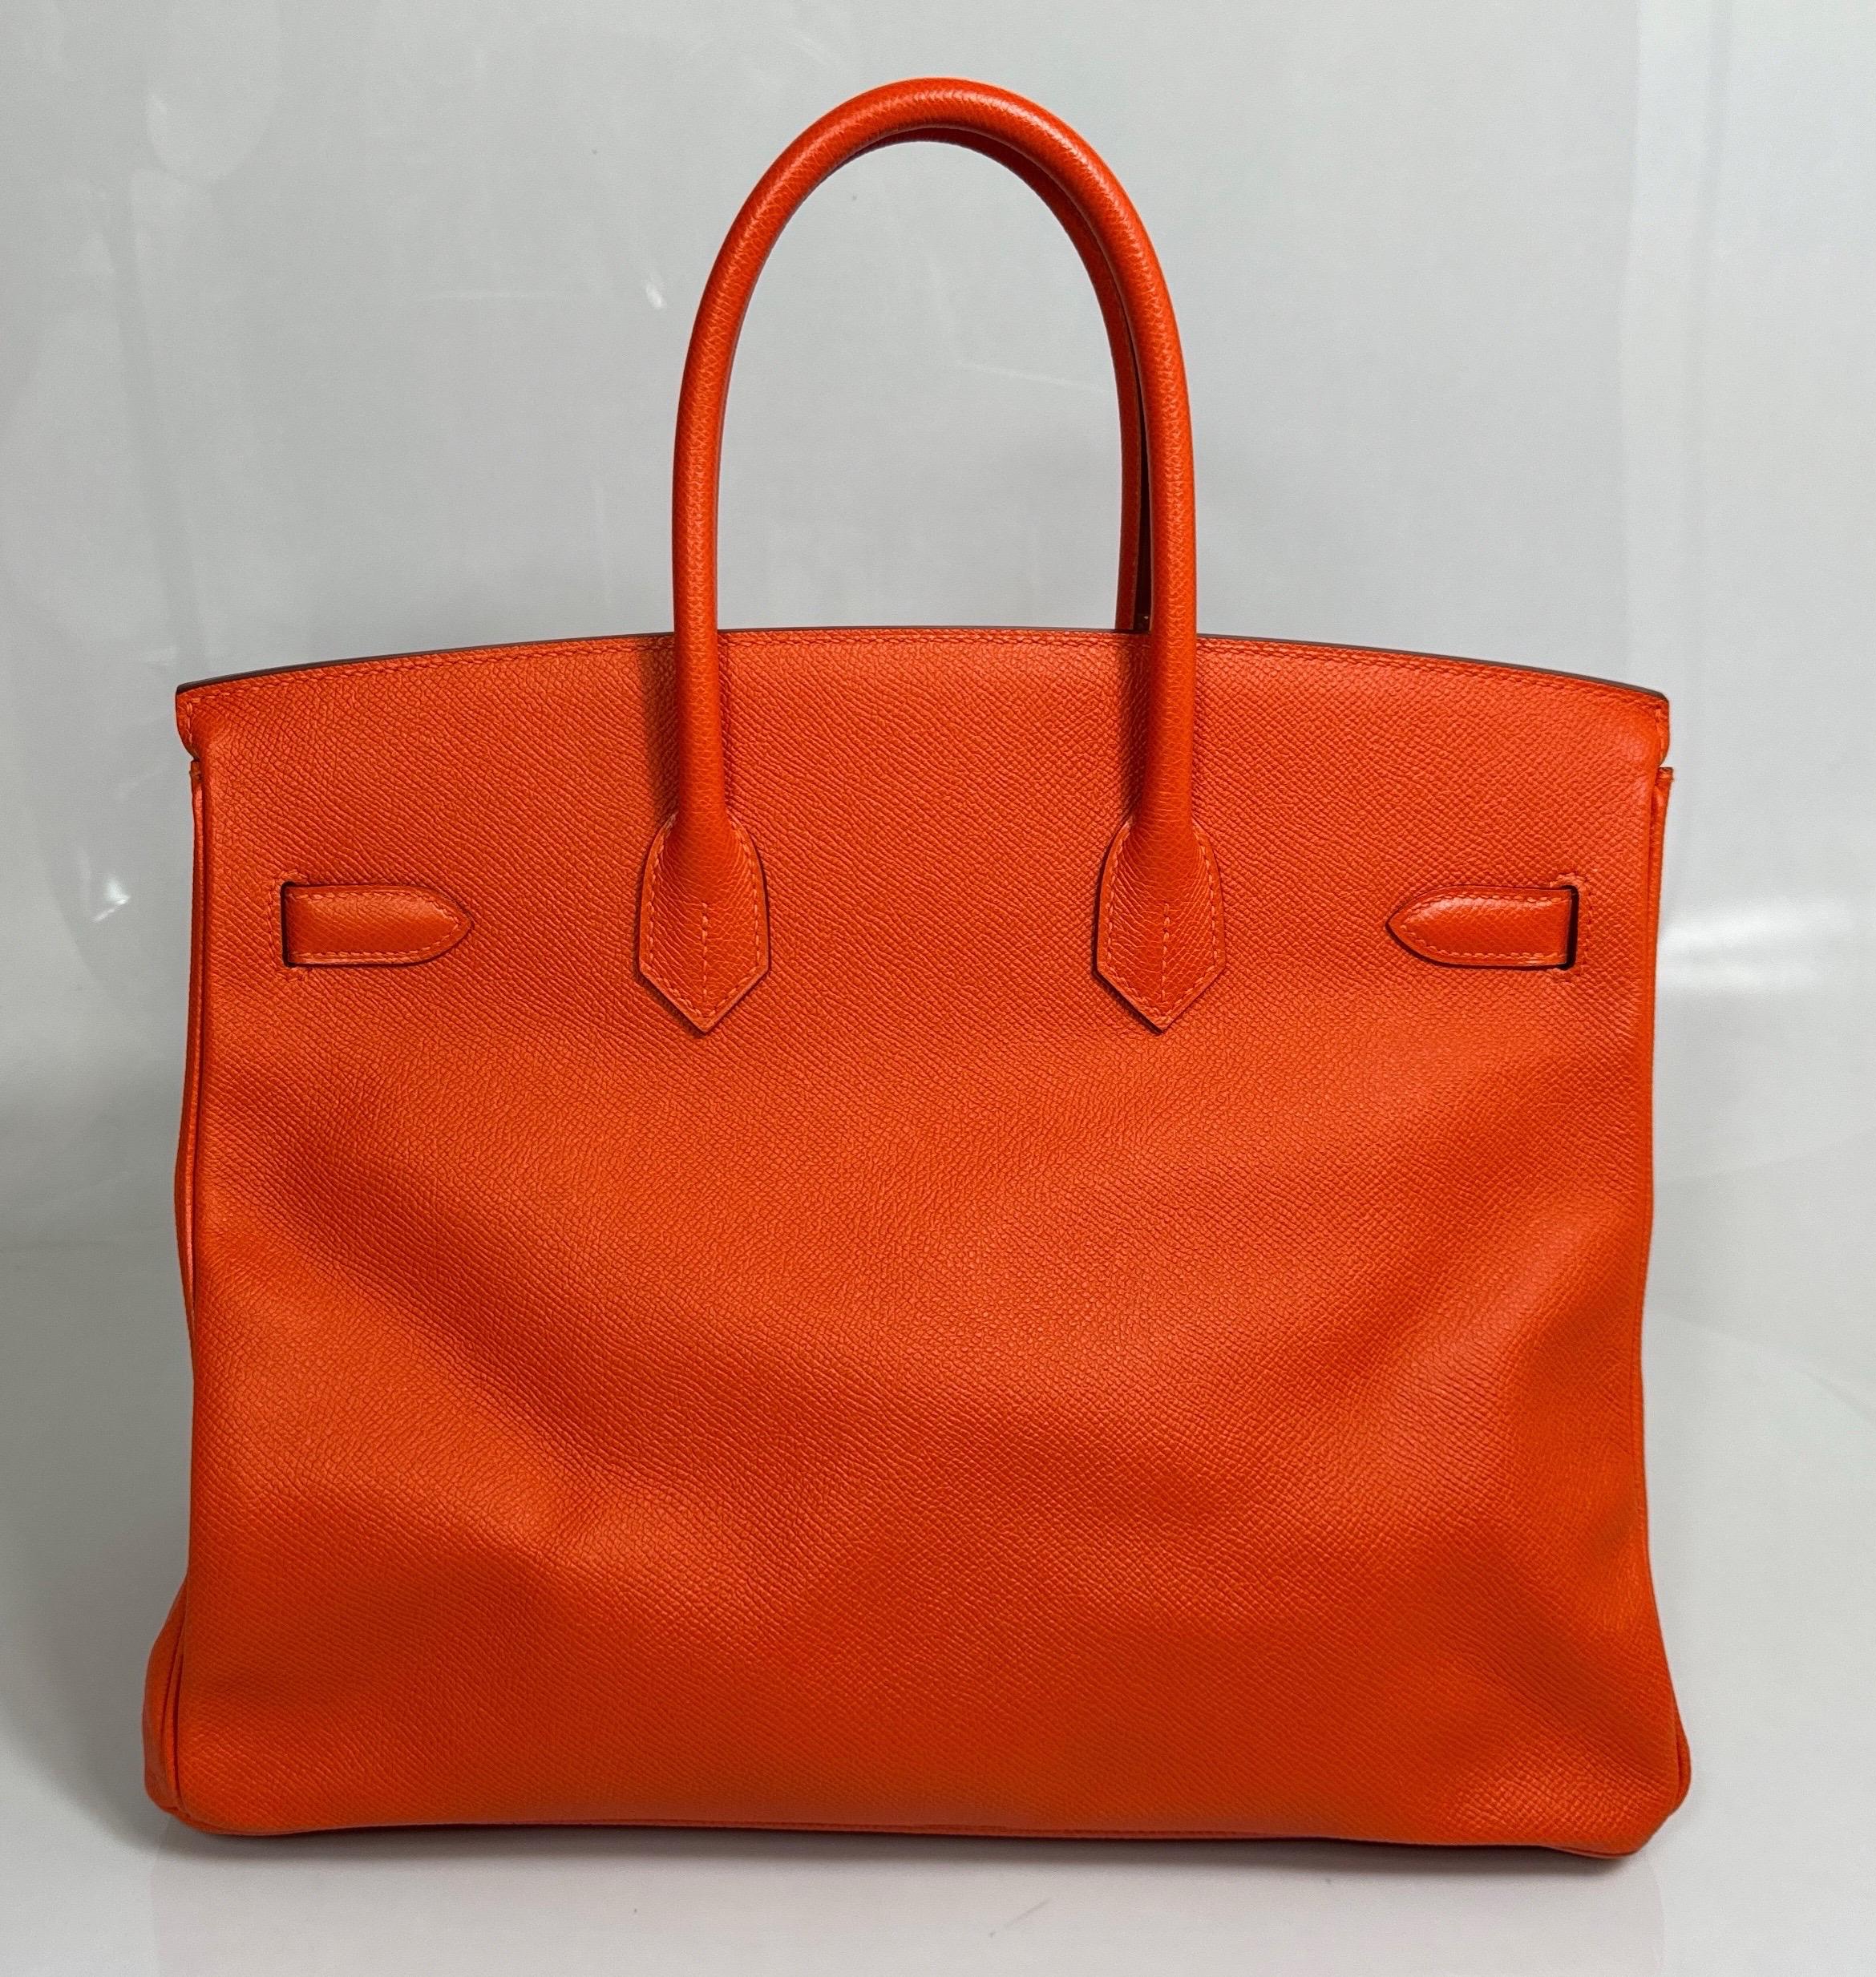 Hermes Orange Togo 35cm Birkin - 2016 - GHW - NEW NEVER CARRIED For Sale 2